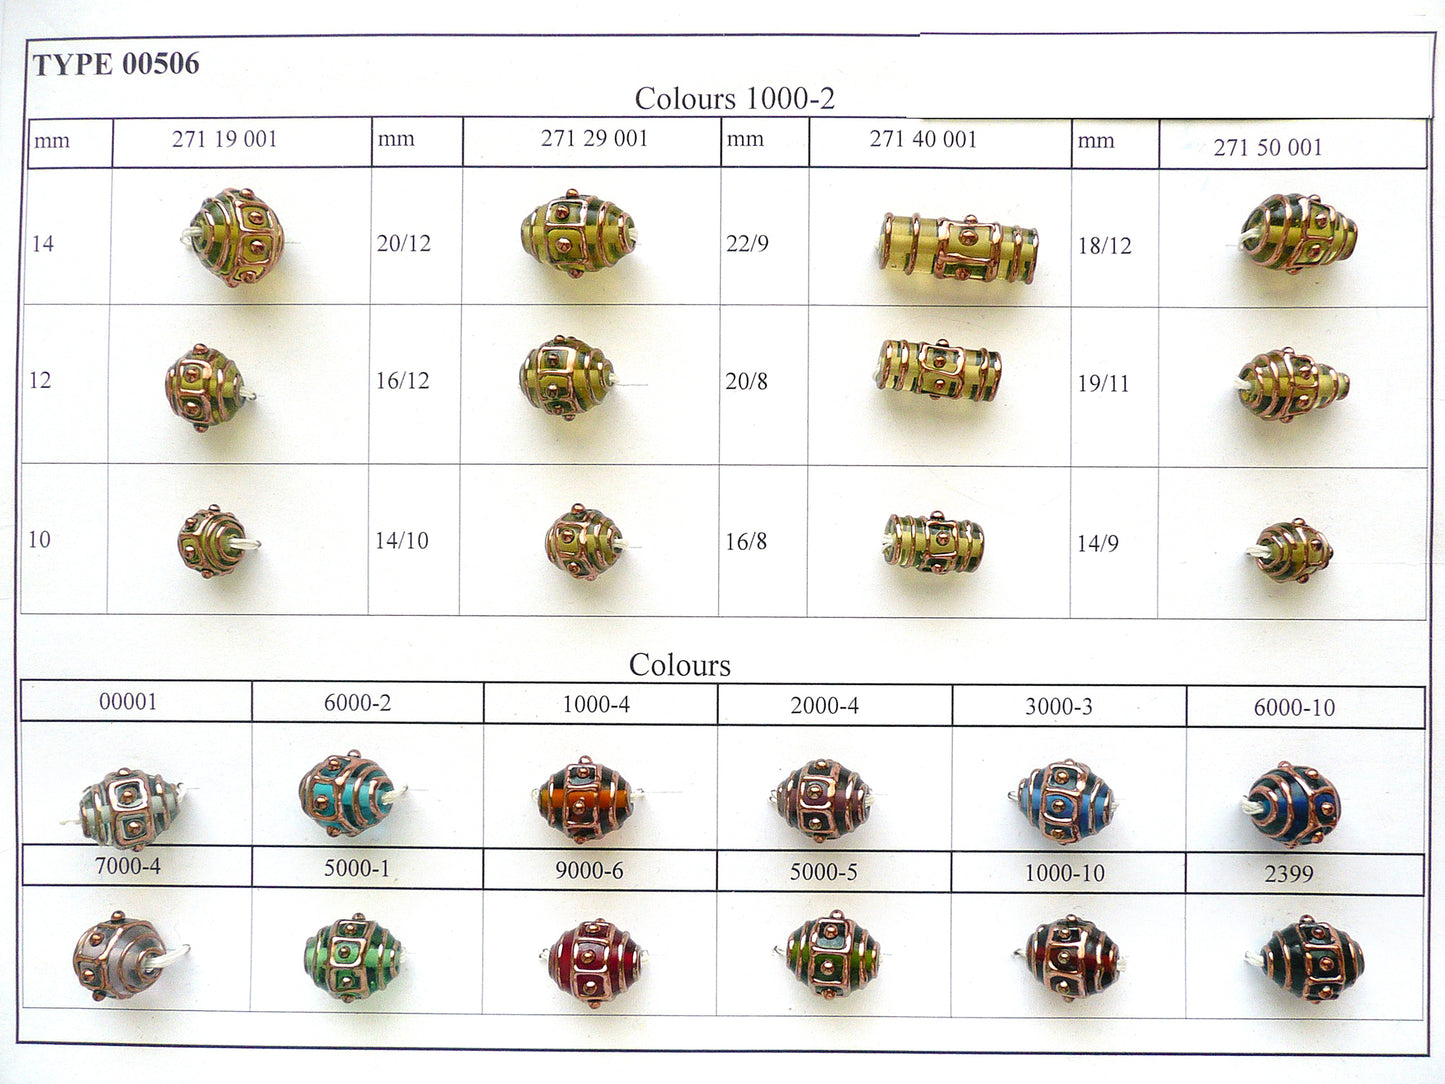 30 pcs Lampwork Beads 506 / Cylinder (271-40-001), Handmade, Preciosa Glass, Czech Republic